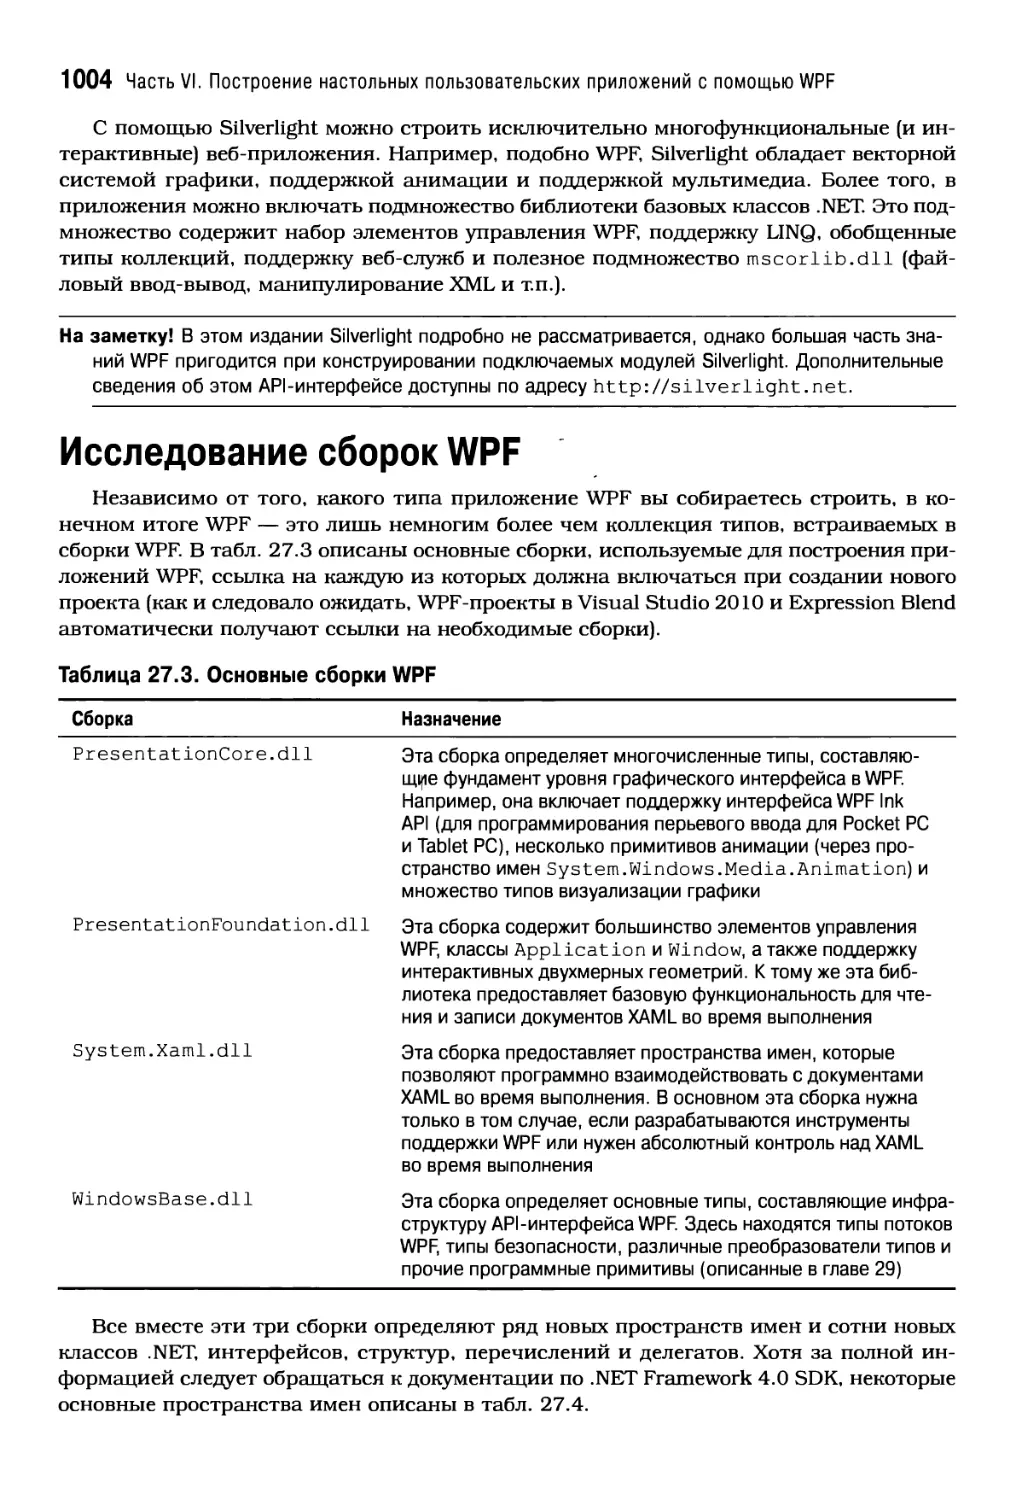 Исследование сборок WPF